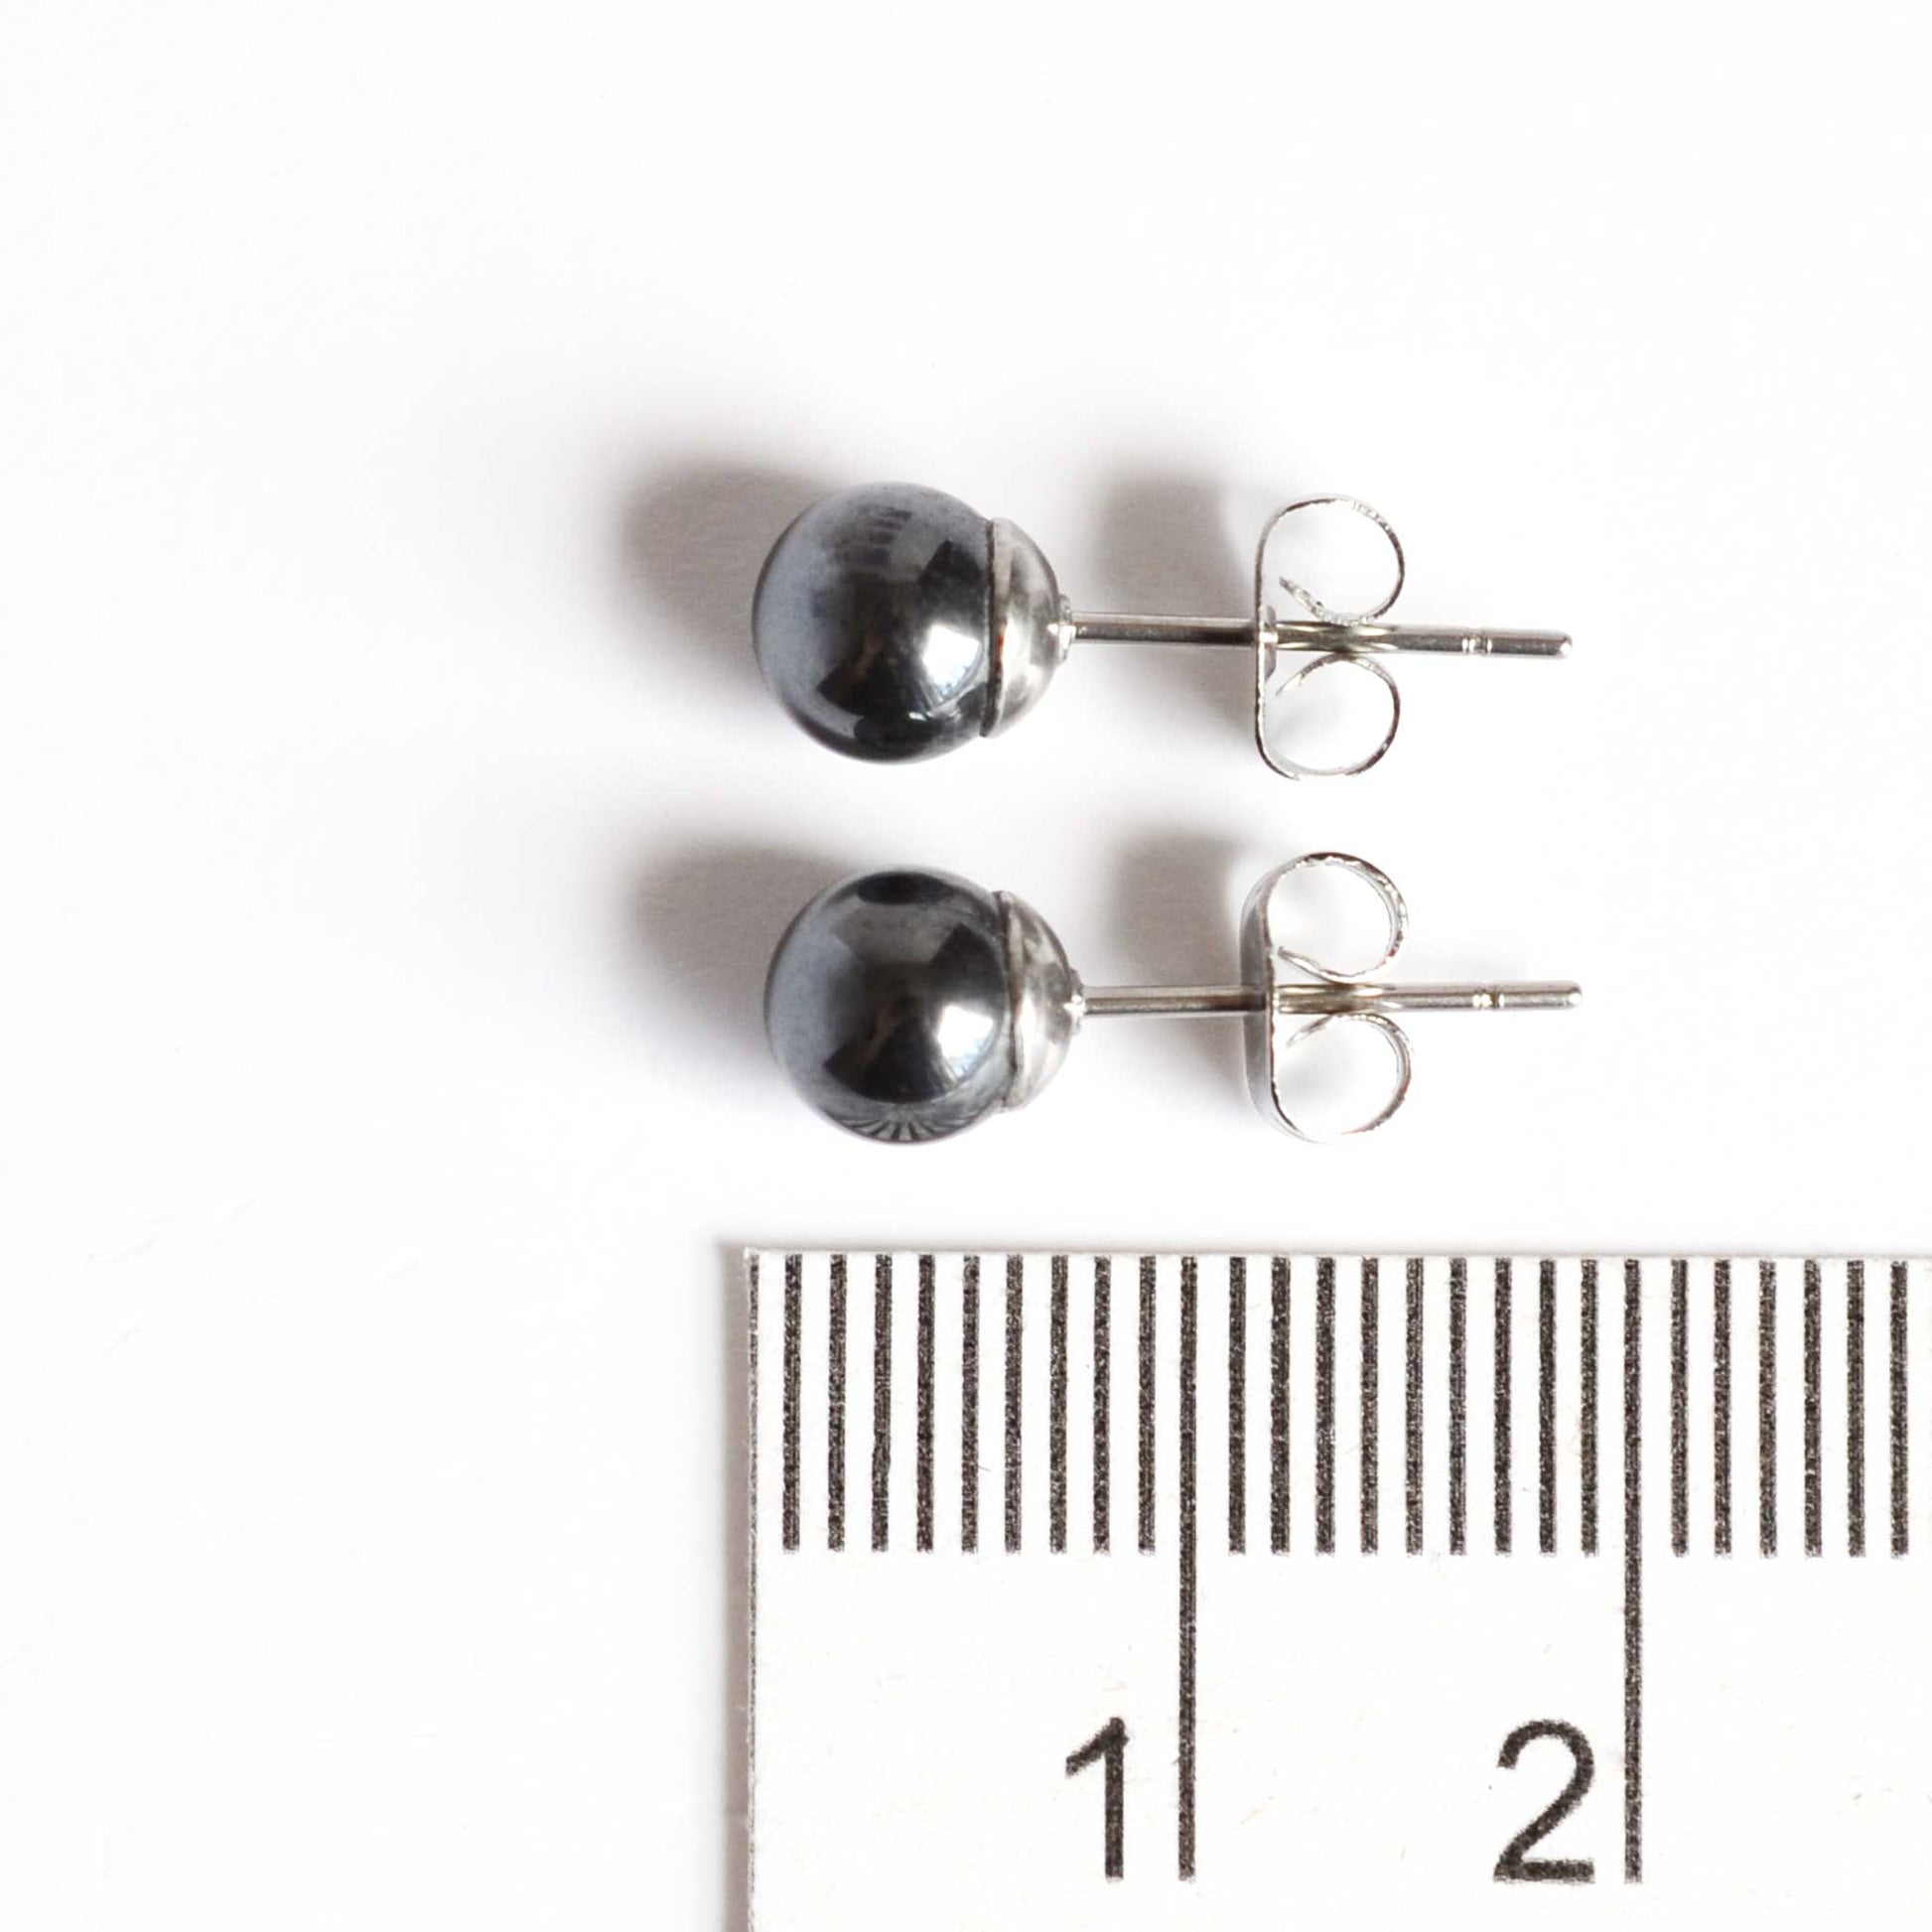 6mm Hematite ball earrings next to ruler